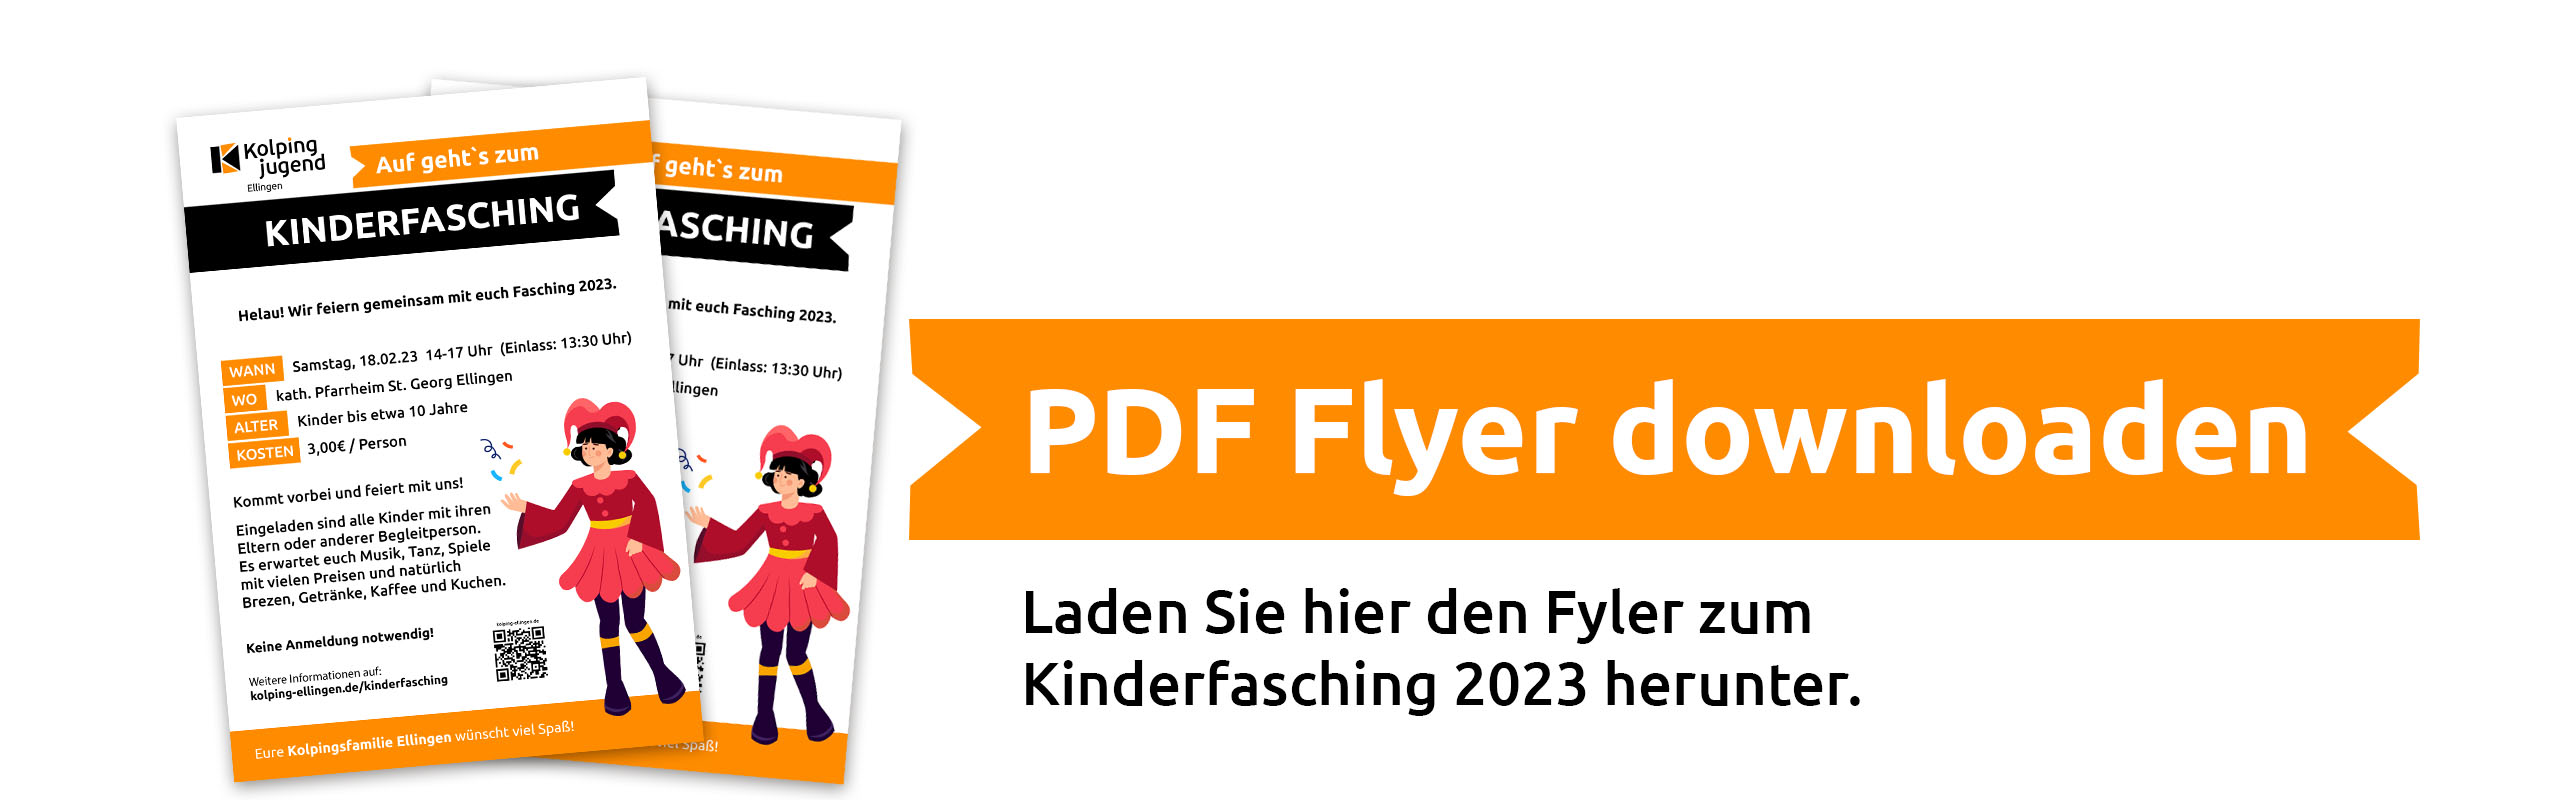 Kinderfasching PDF Plakat Download Ellingen